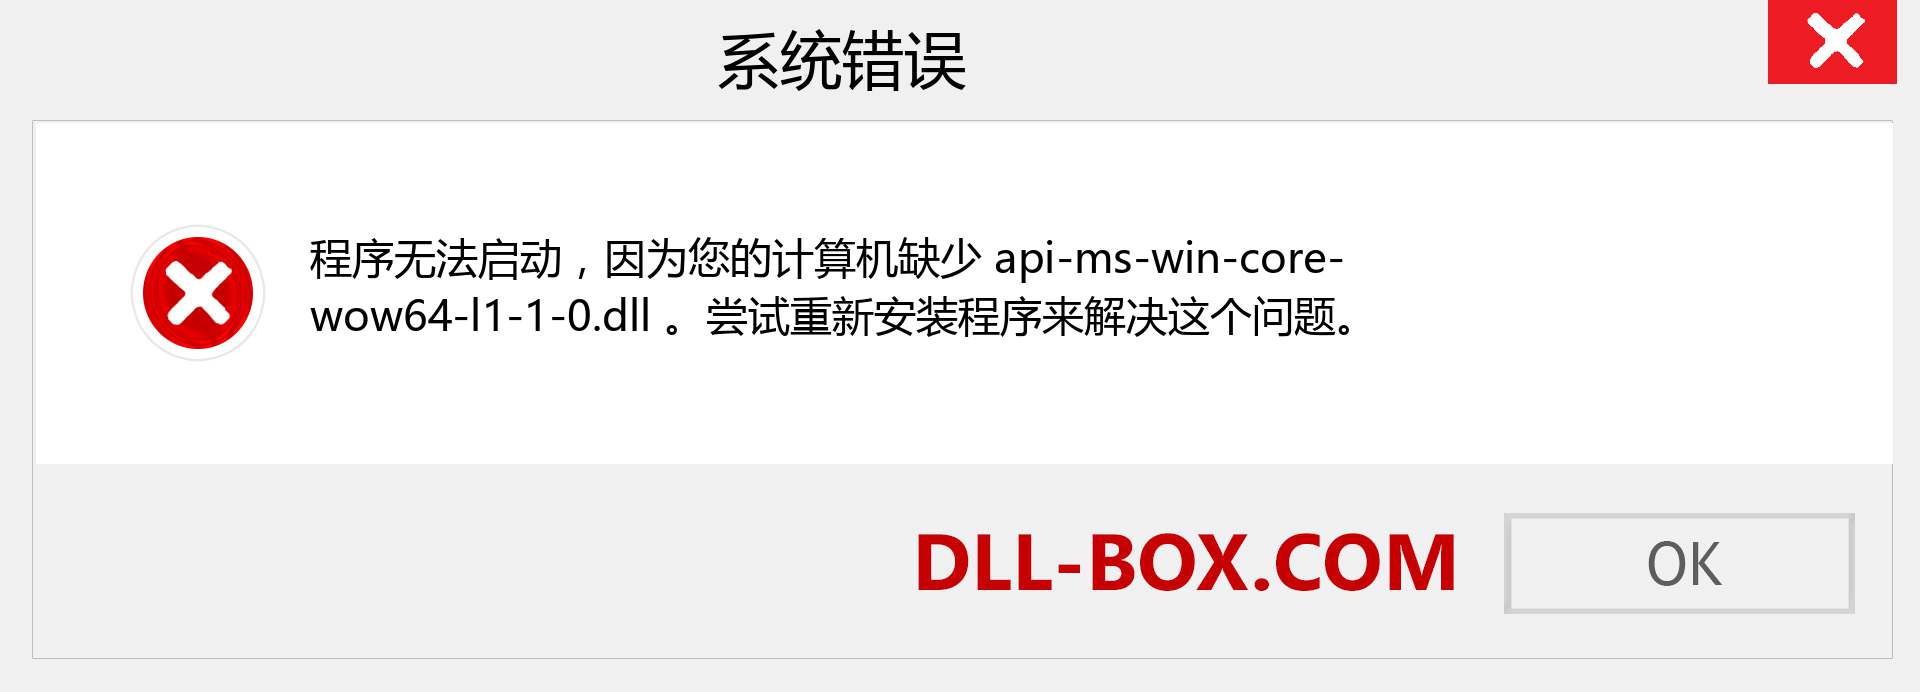 api-ms-win-core-wow64-l1-1-0.dll 文件丢失？。 适用于 Windows 7、8、10 的下载 - 修复 Windows、照片、图像上的 api-ms-win-core-wow64-l1-1-0 dll 丢失错误